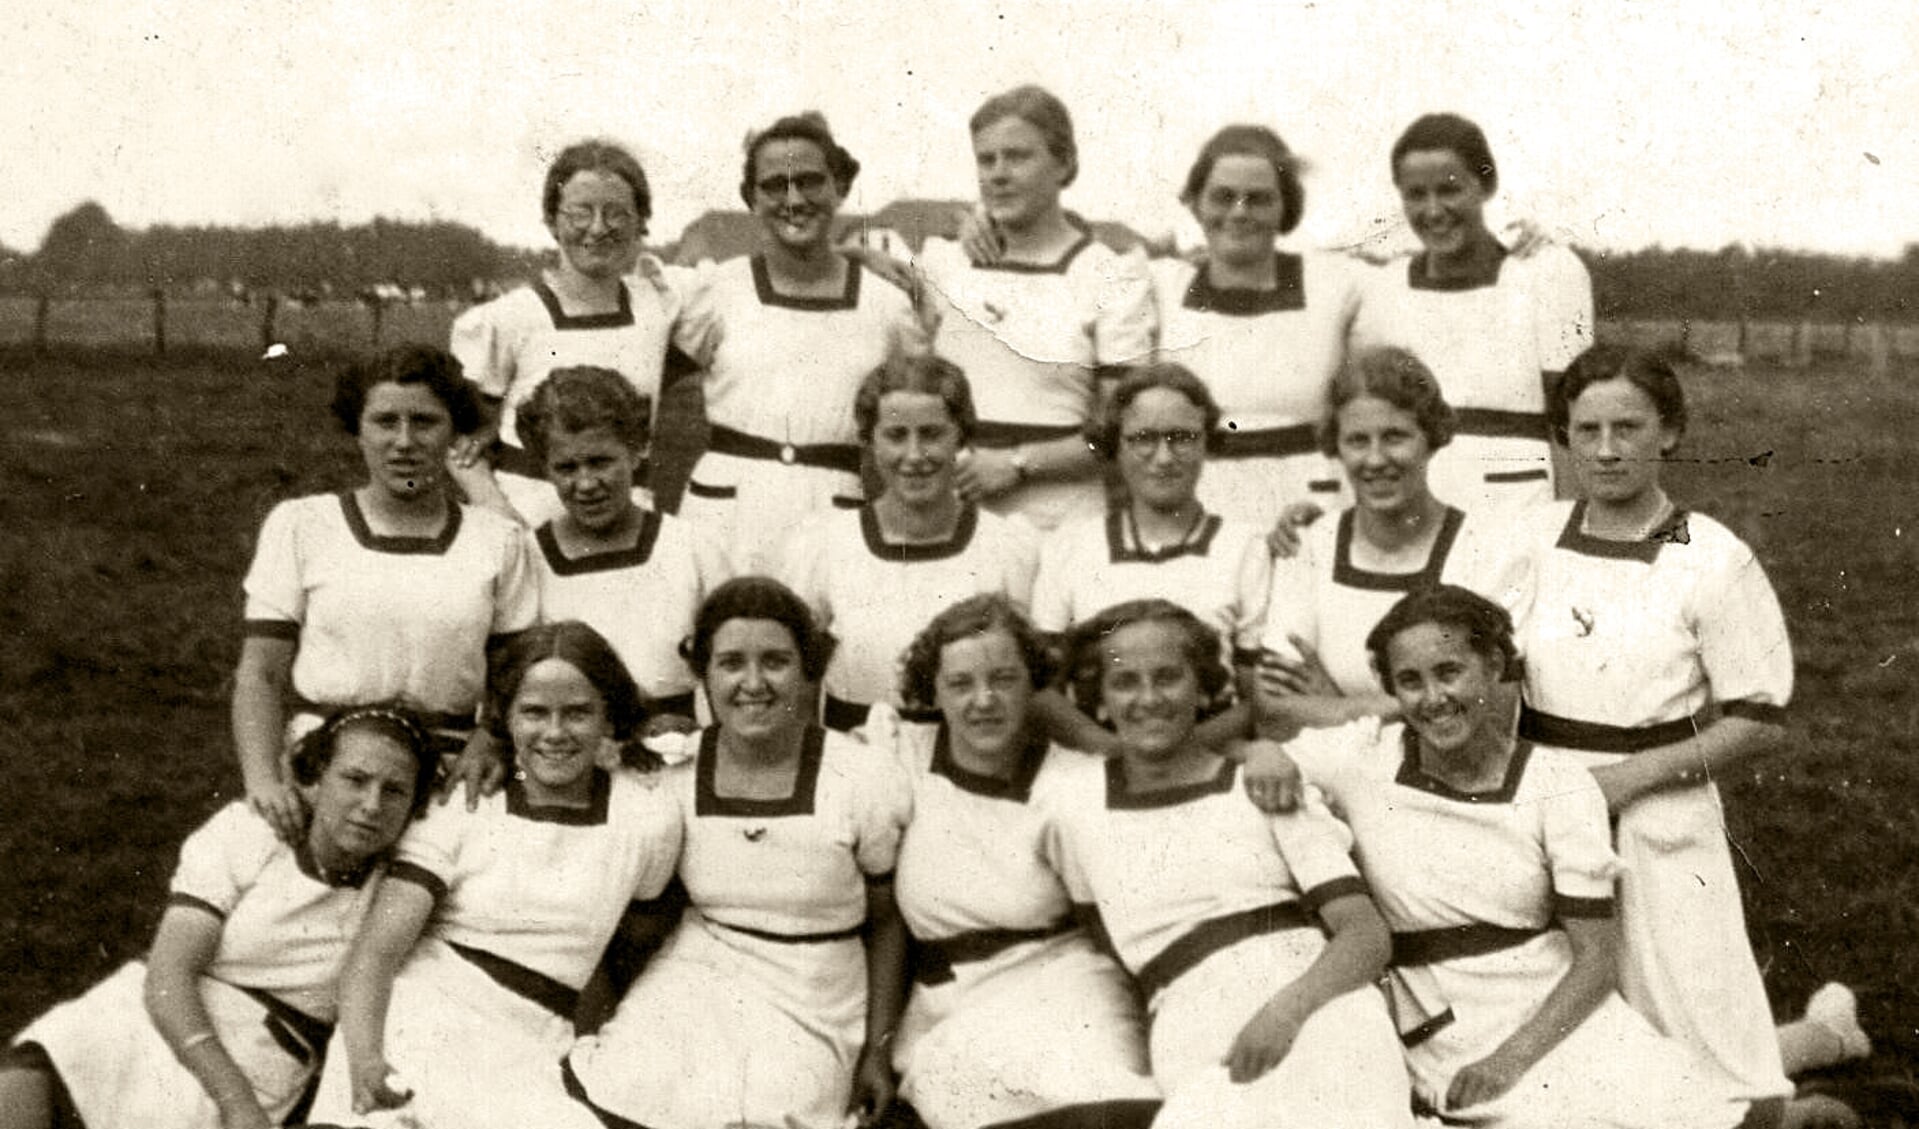 Dameskorfbalteam in 1939. Hoe heette de dameskorfbalvereniging?